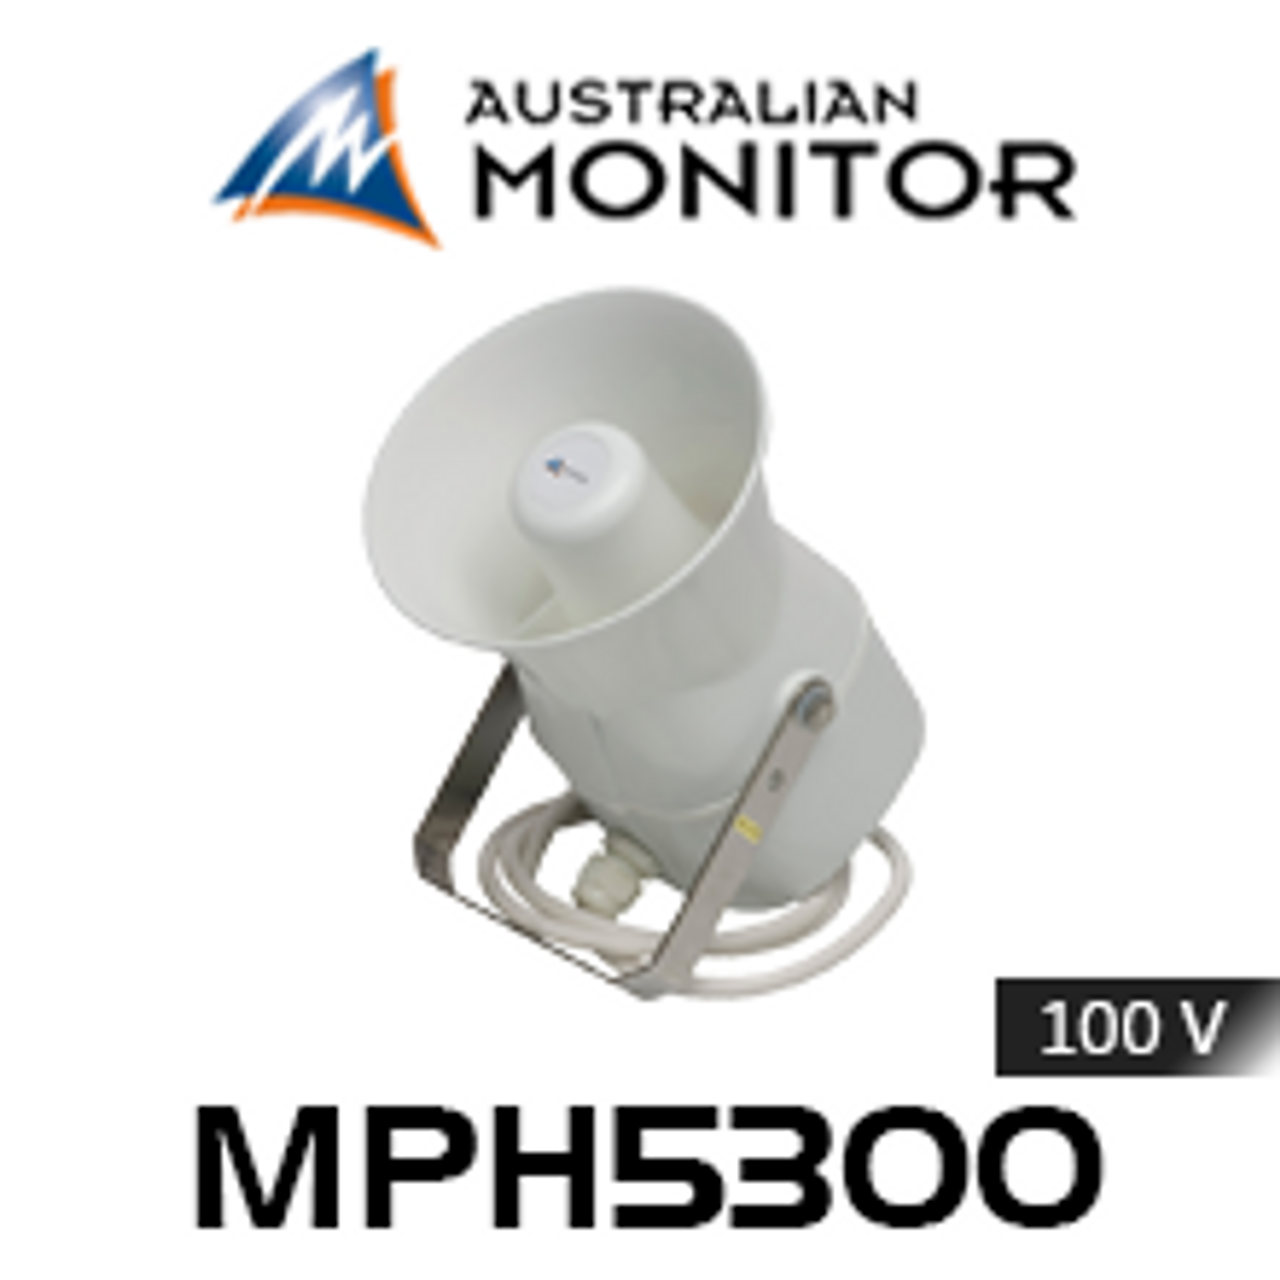 Australian Monitor MPH5300 Waterproof Horn Speaker